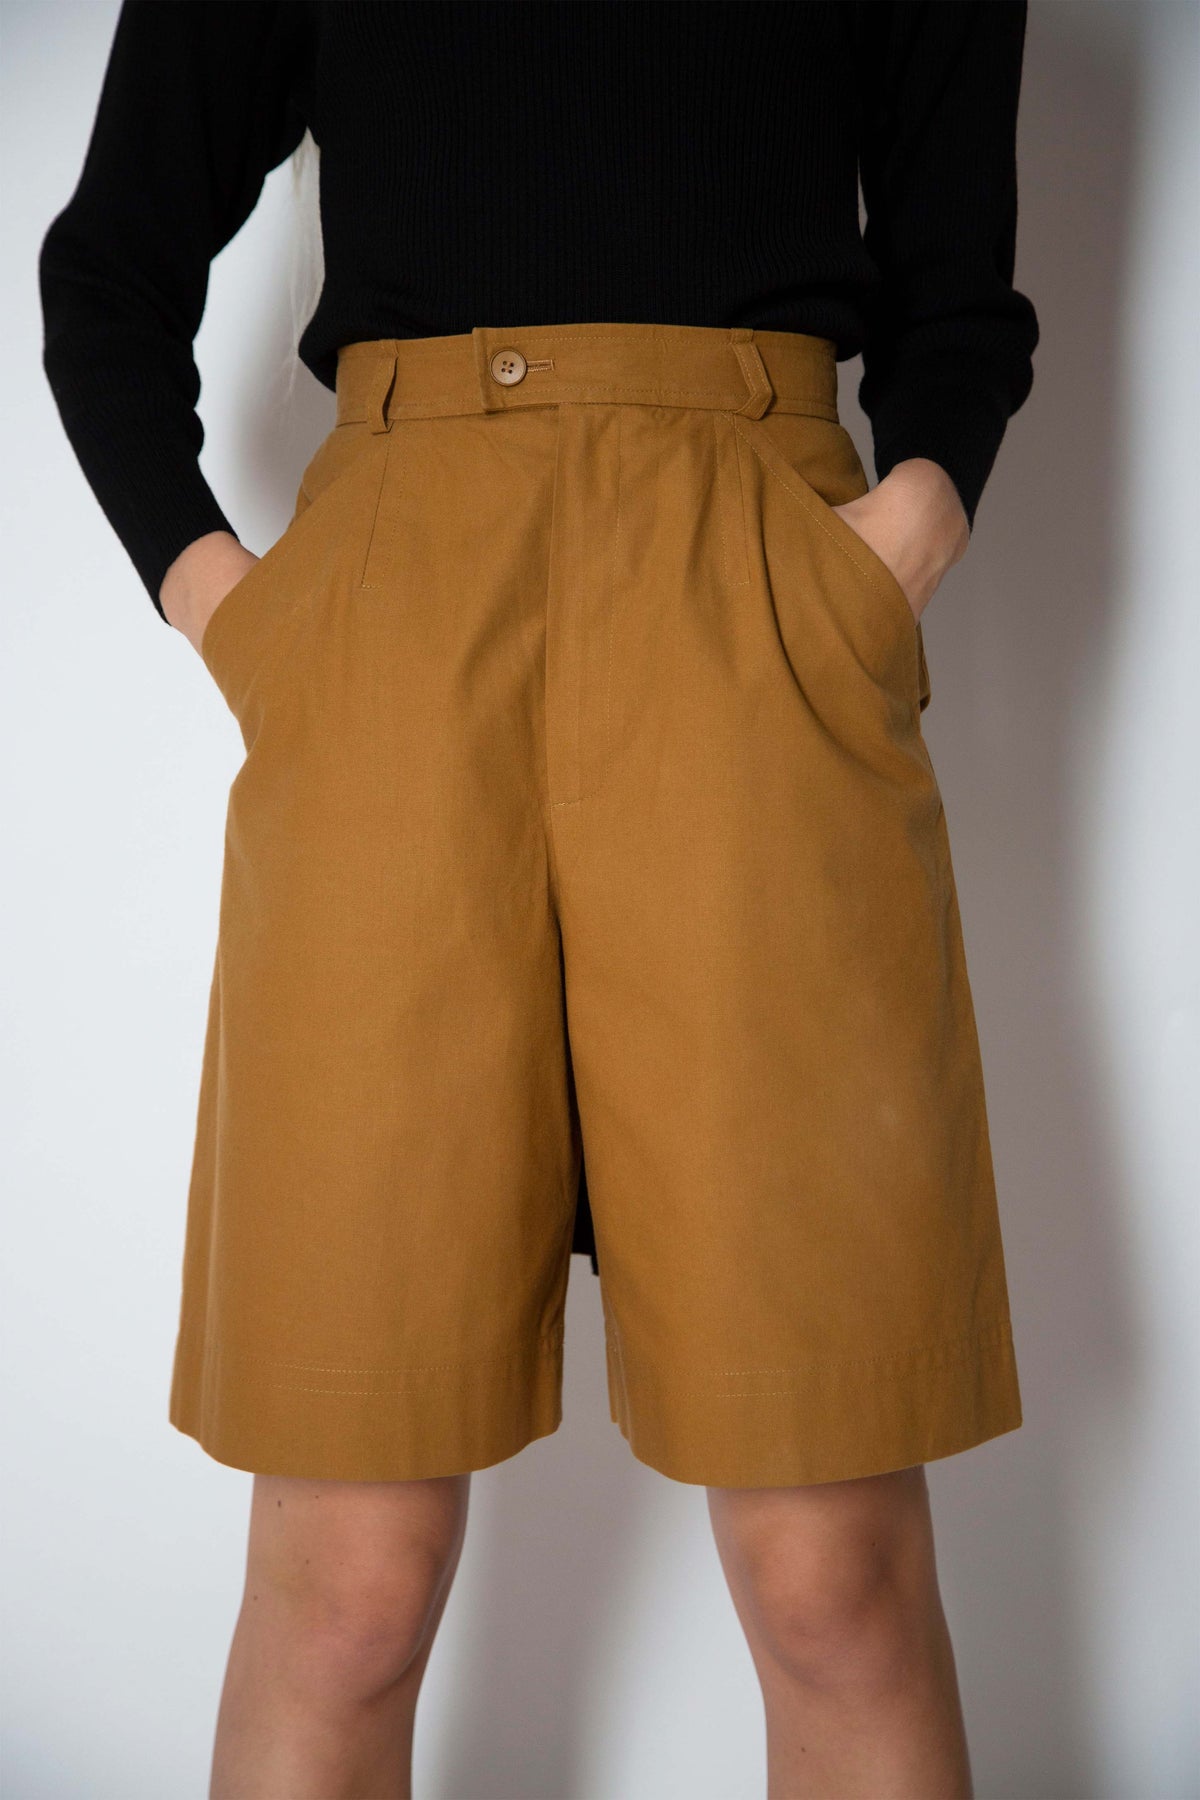 Yves Saint Laurent bermuda shorts